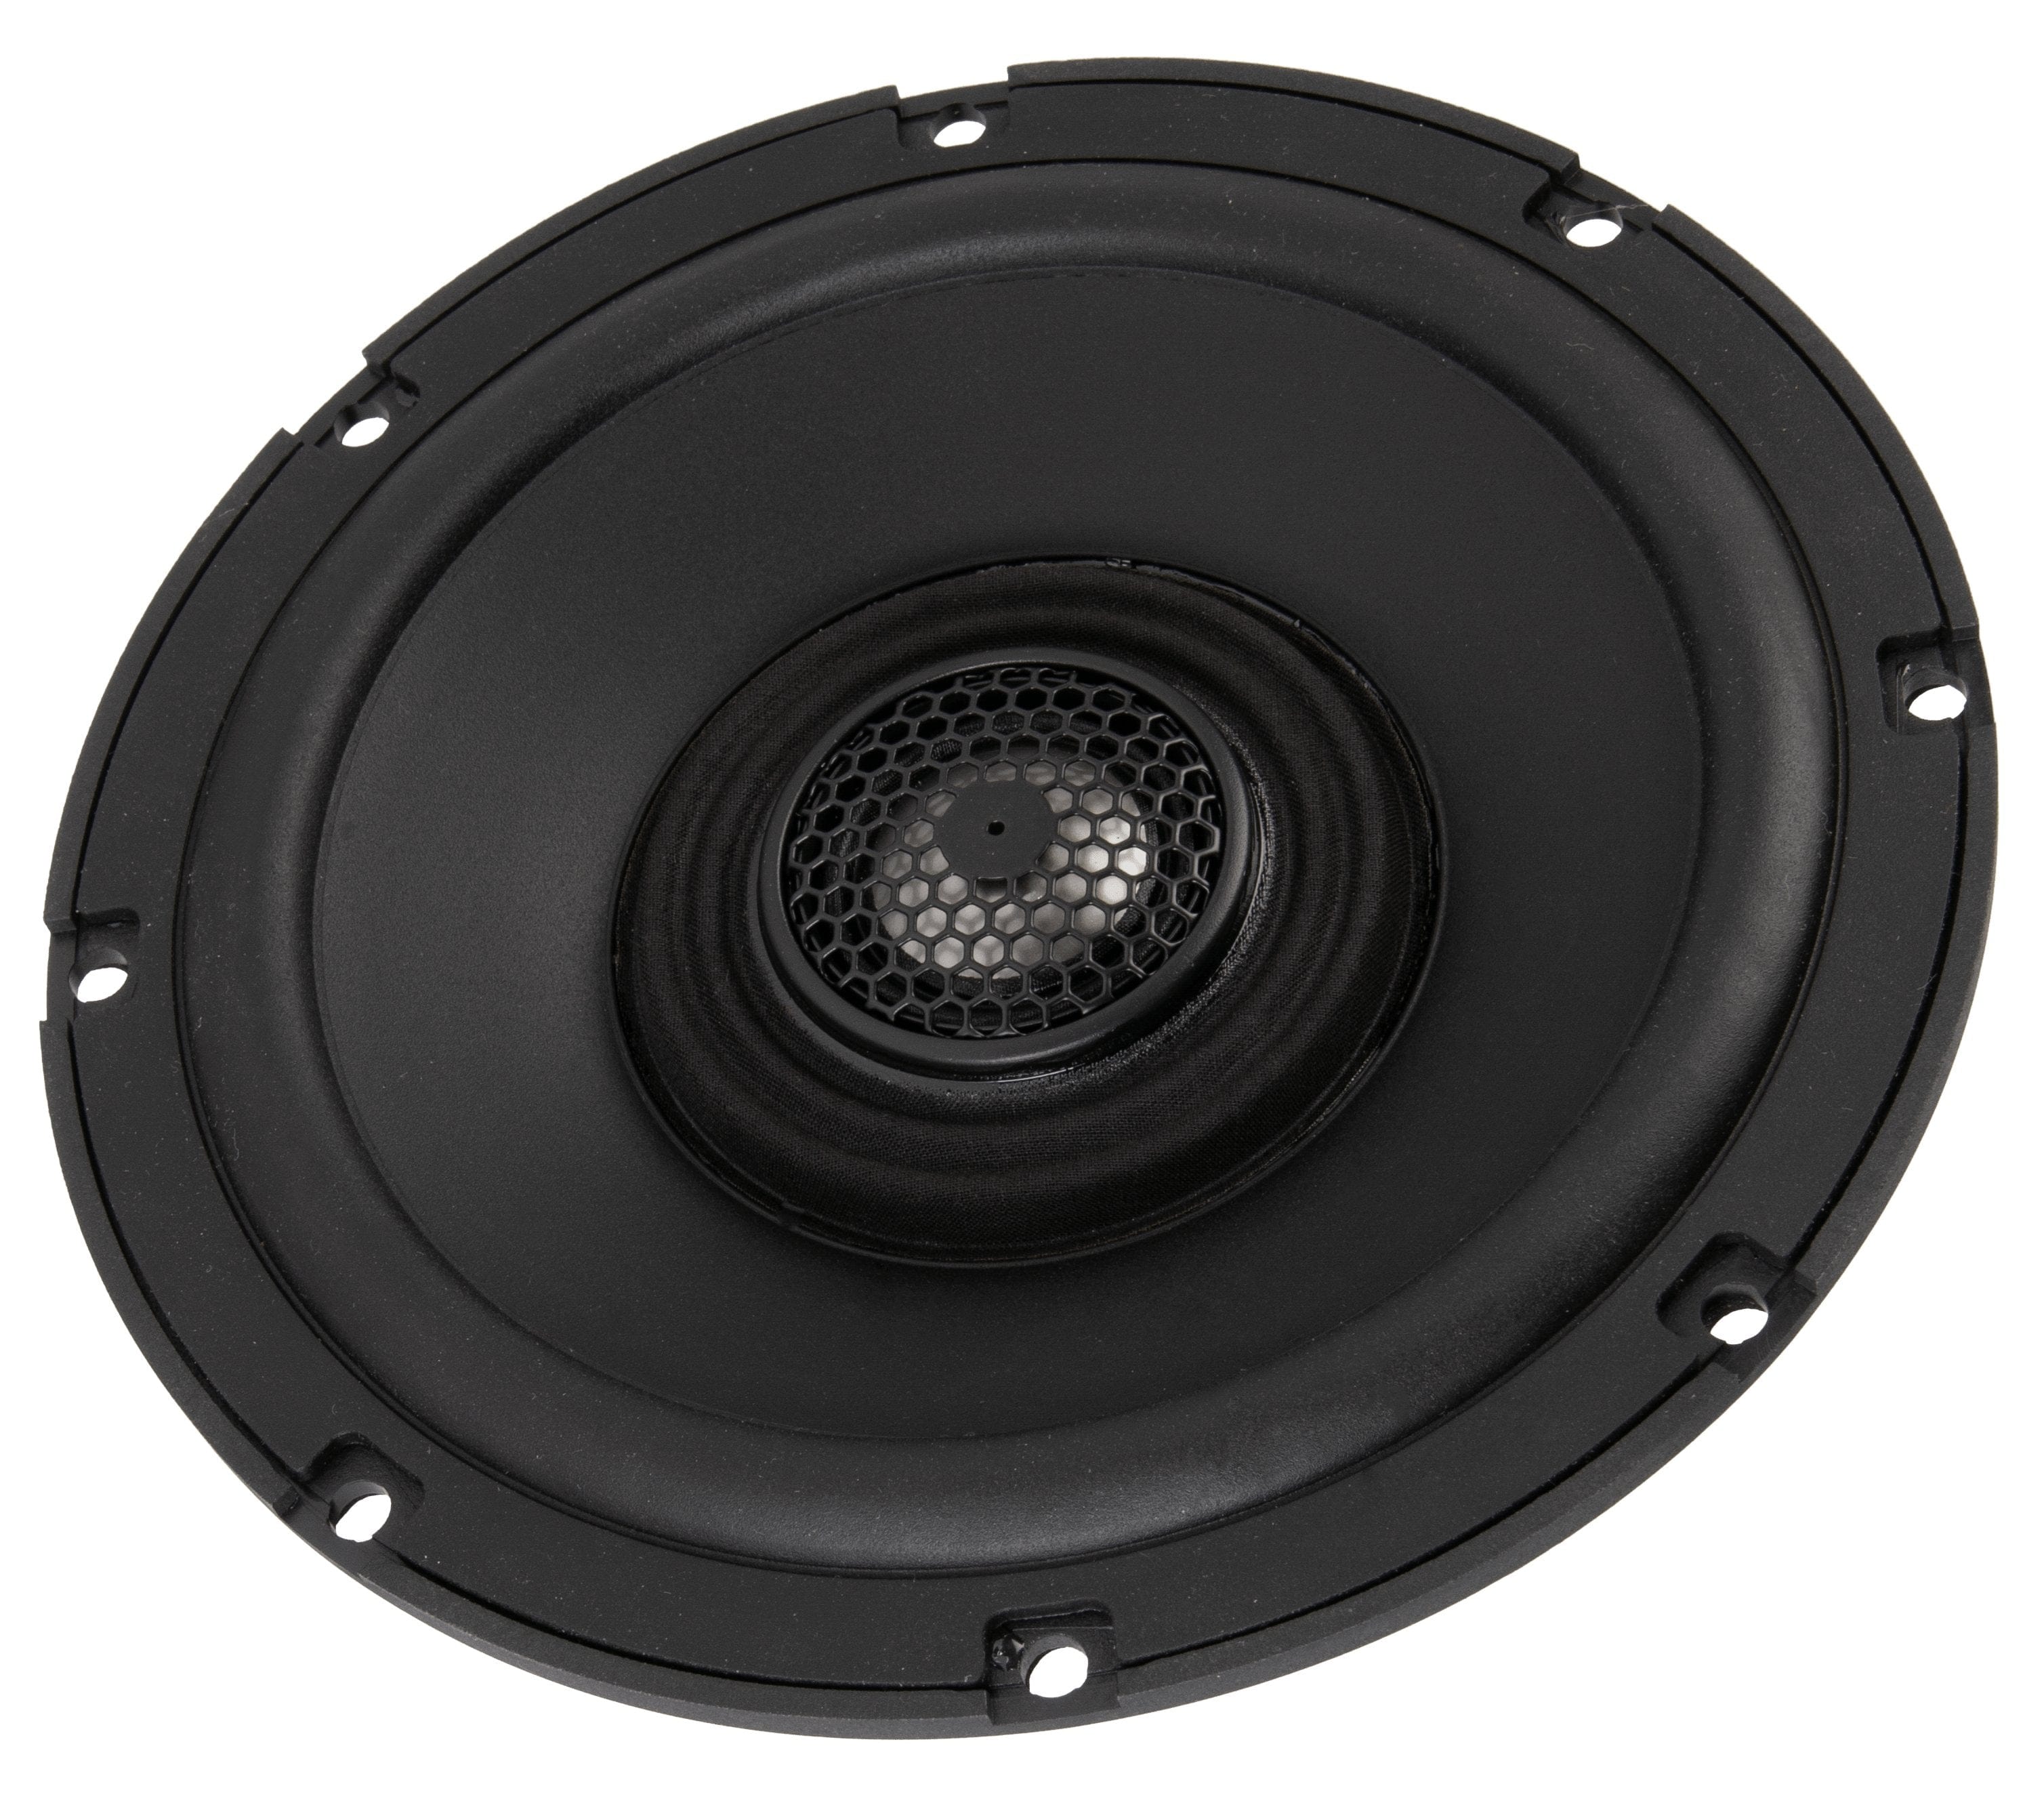 Soundstream Audio - Speakers Soundstream 6.5" Fairing Speaker Upgrade Kit for 2014+ HD Touring Models